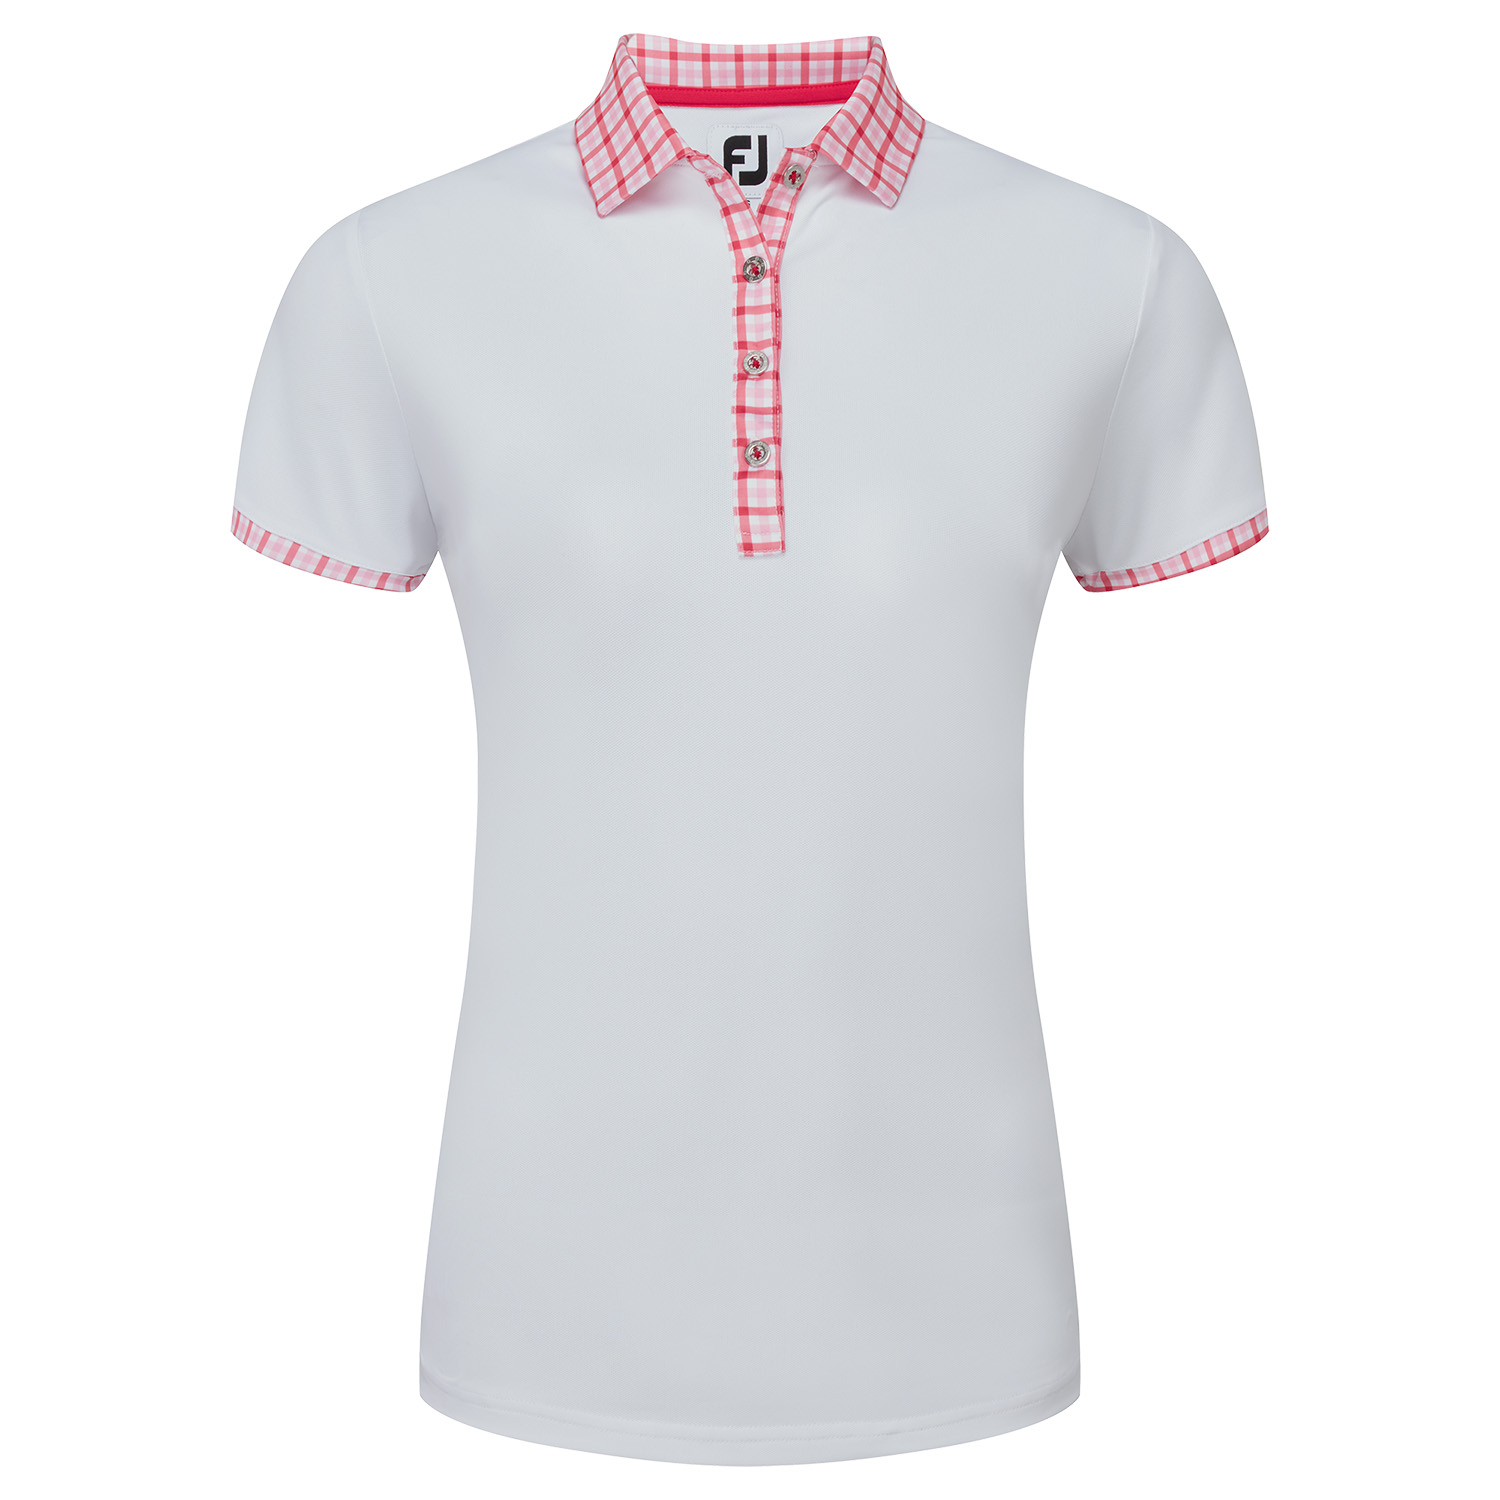 Image of FootJoy Gingham Trim Ladies Golf Polo Shirt